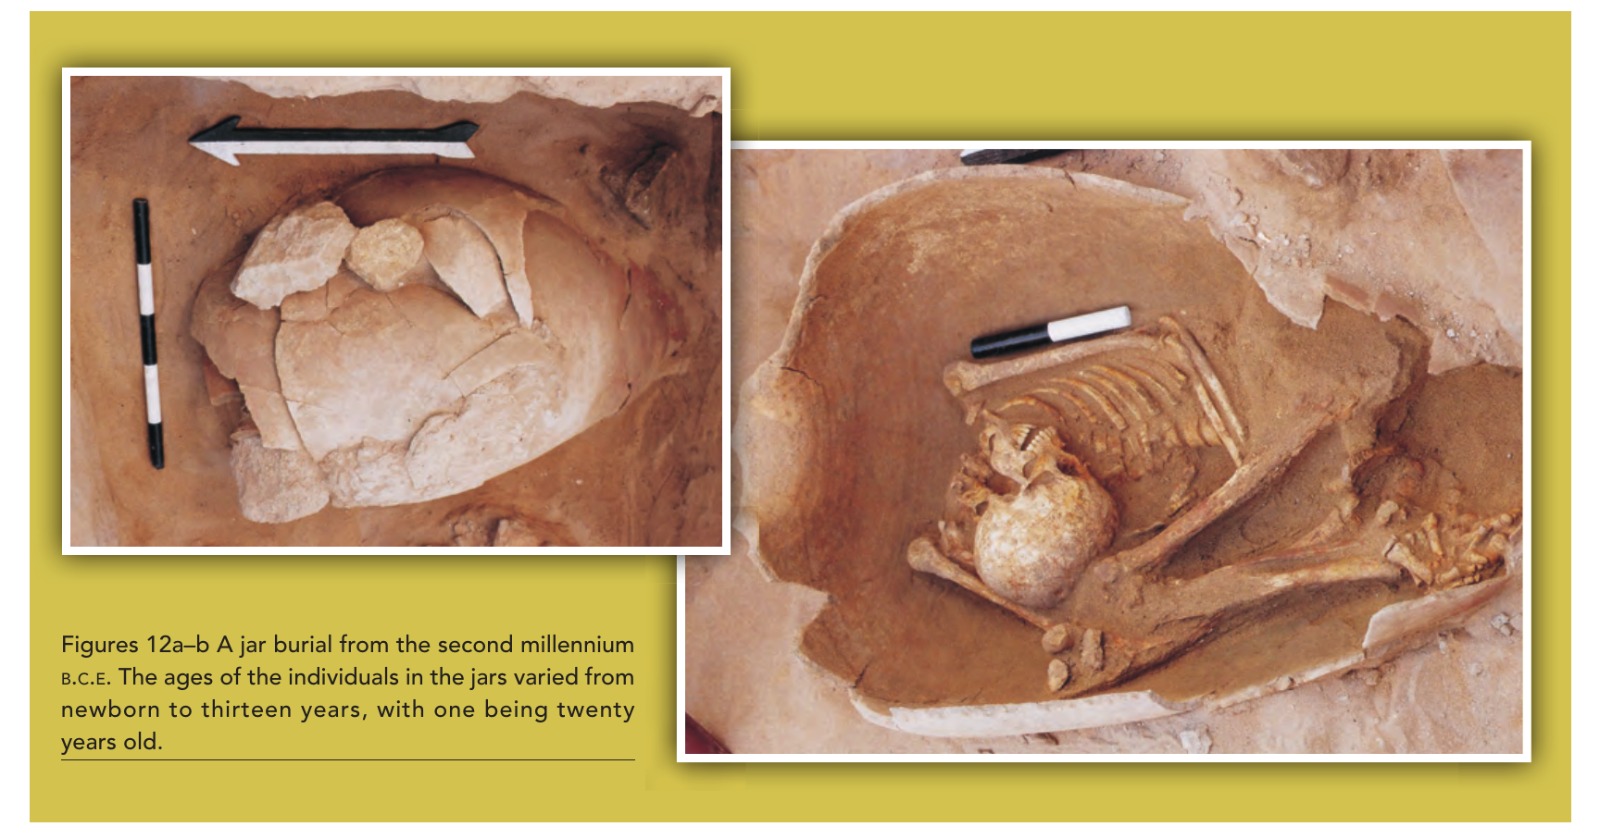 Inhumación en vasija (pithos) en Sidón, Líbano, II milenio a.C., la mayoría niños menores de 13 años